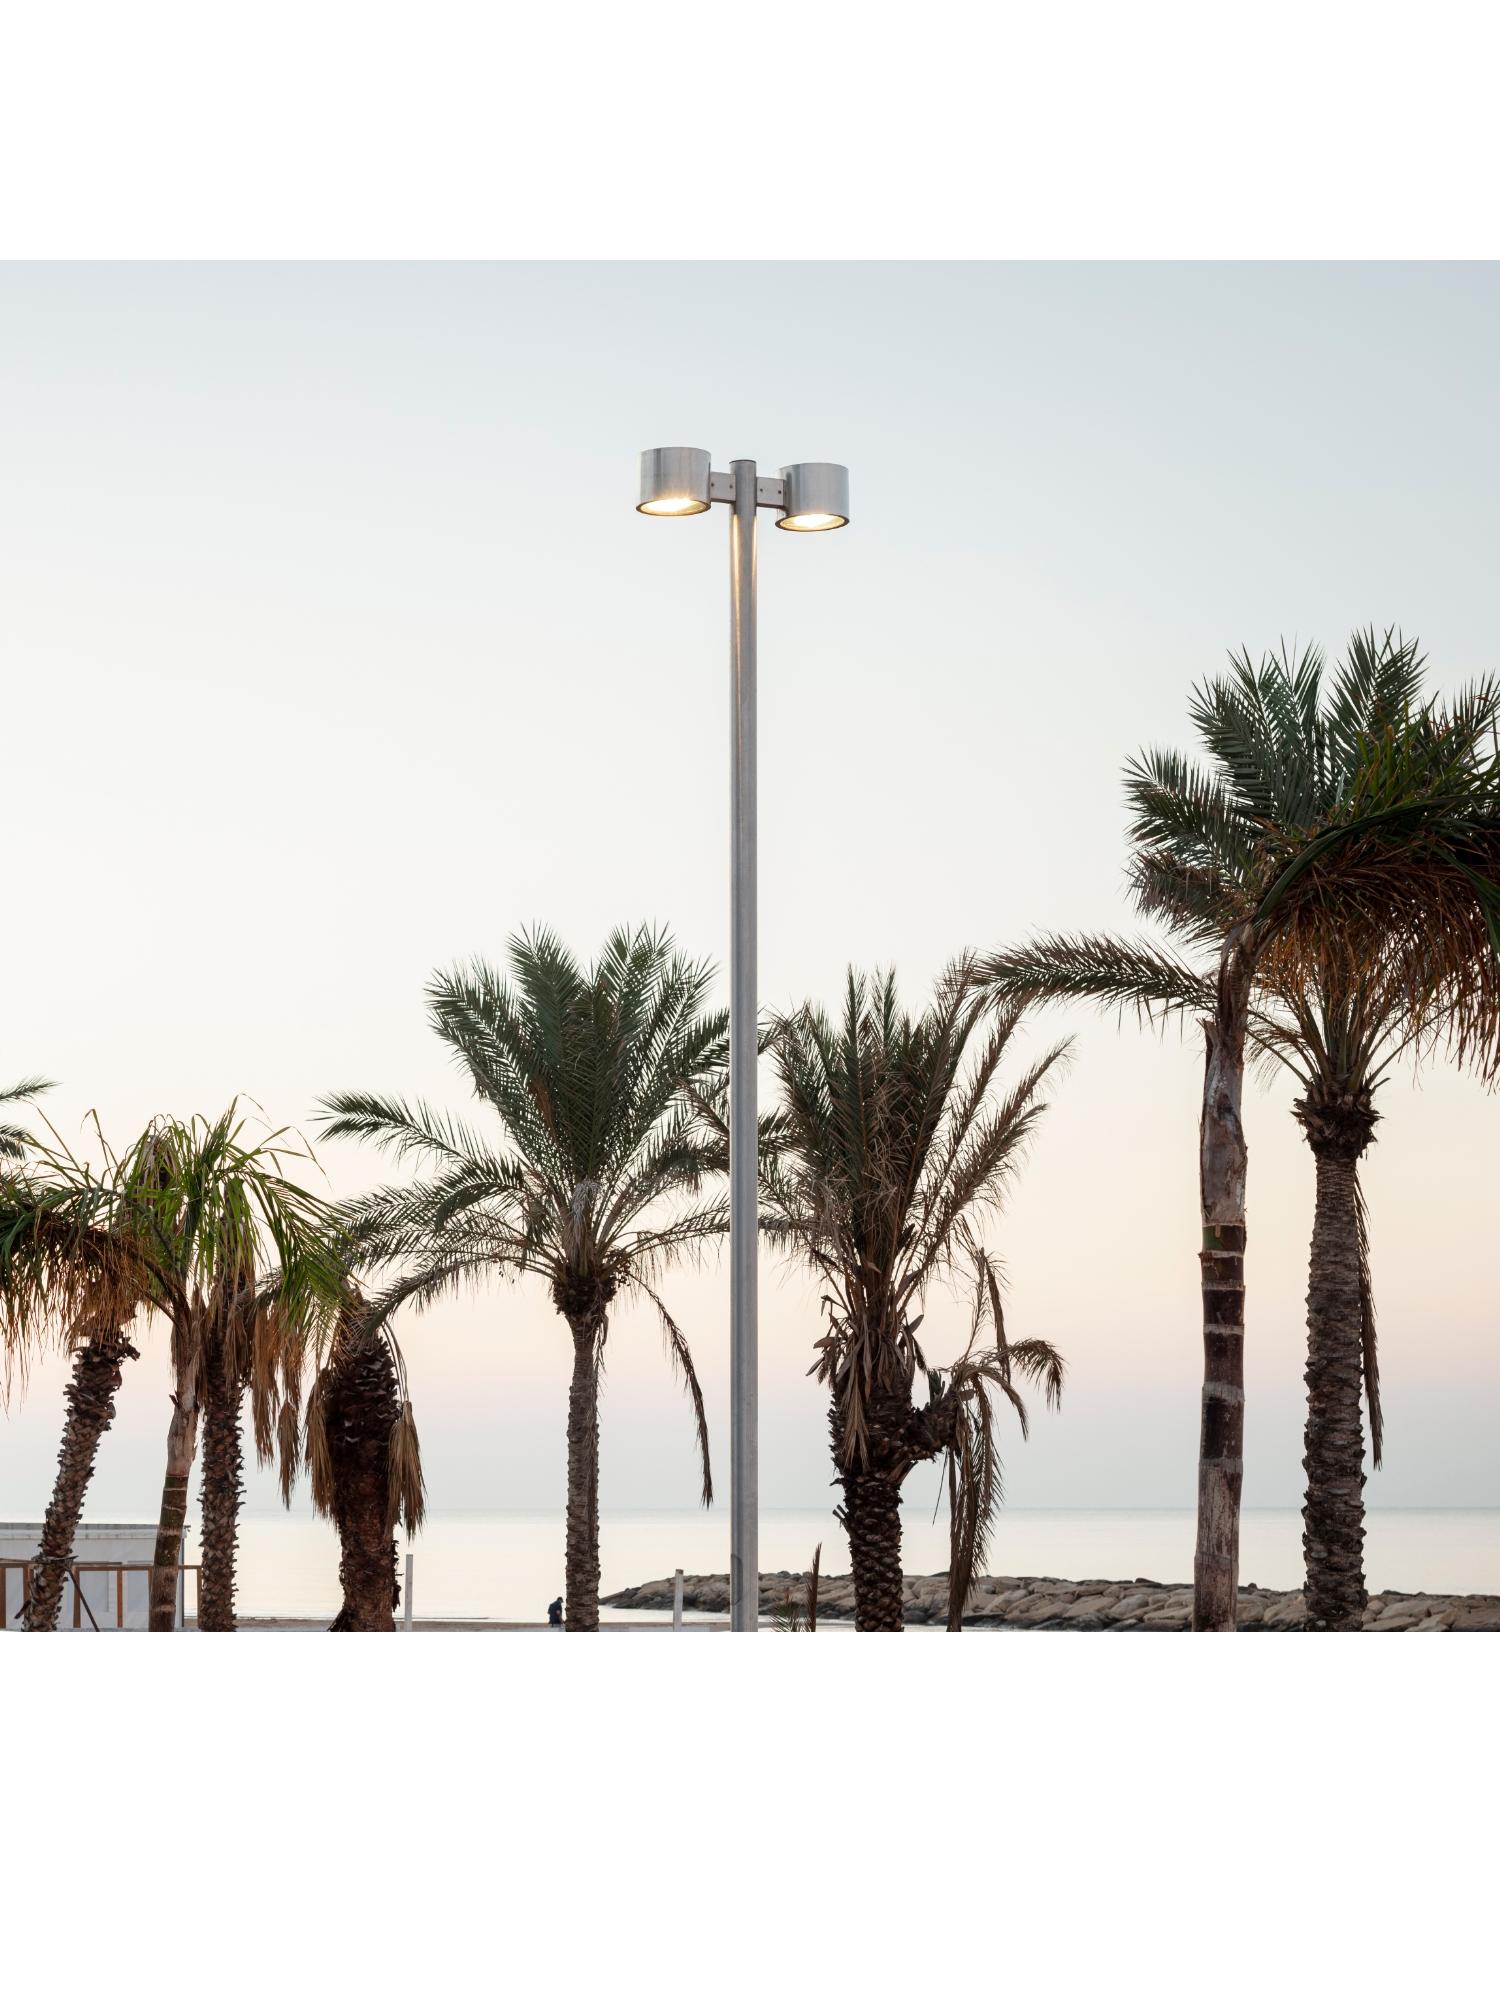 Stra&szlig;enmasten f&uuml;r eine effiziente Stra&szlig;enbeleuchtung:
die Strandpromenade von Marina di Ragusa